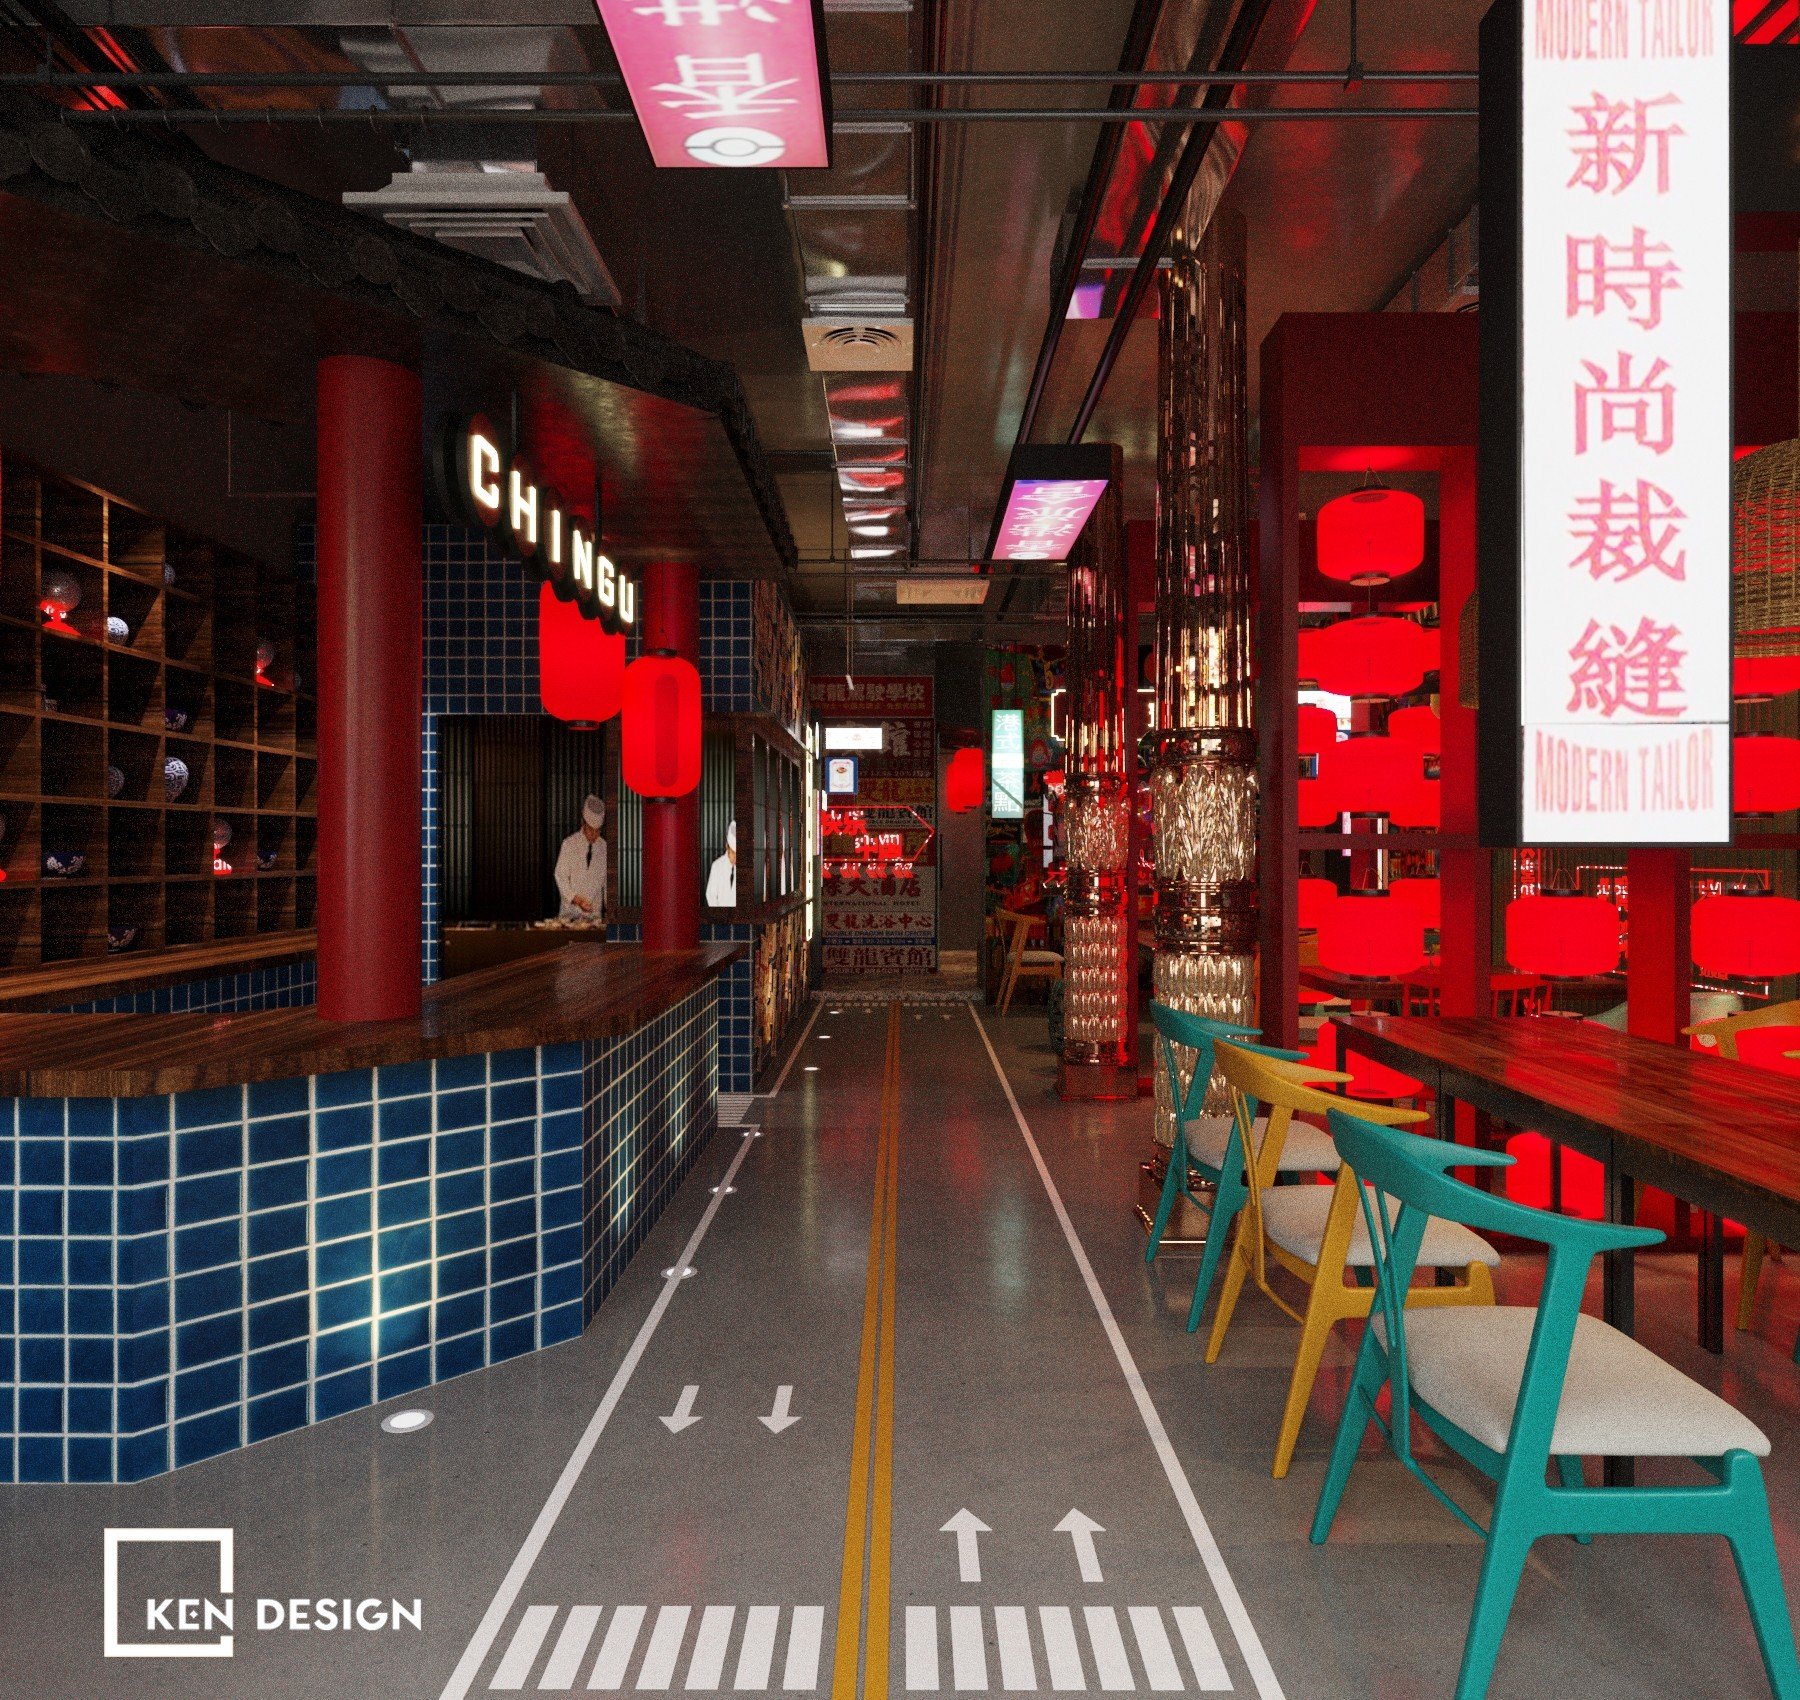 Thiết kế nhà hàng Chingu tại Đức - Trải nghiệm không gian Hồng Kông cuốn hút